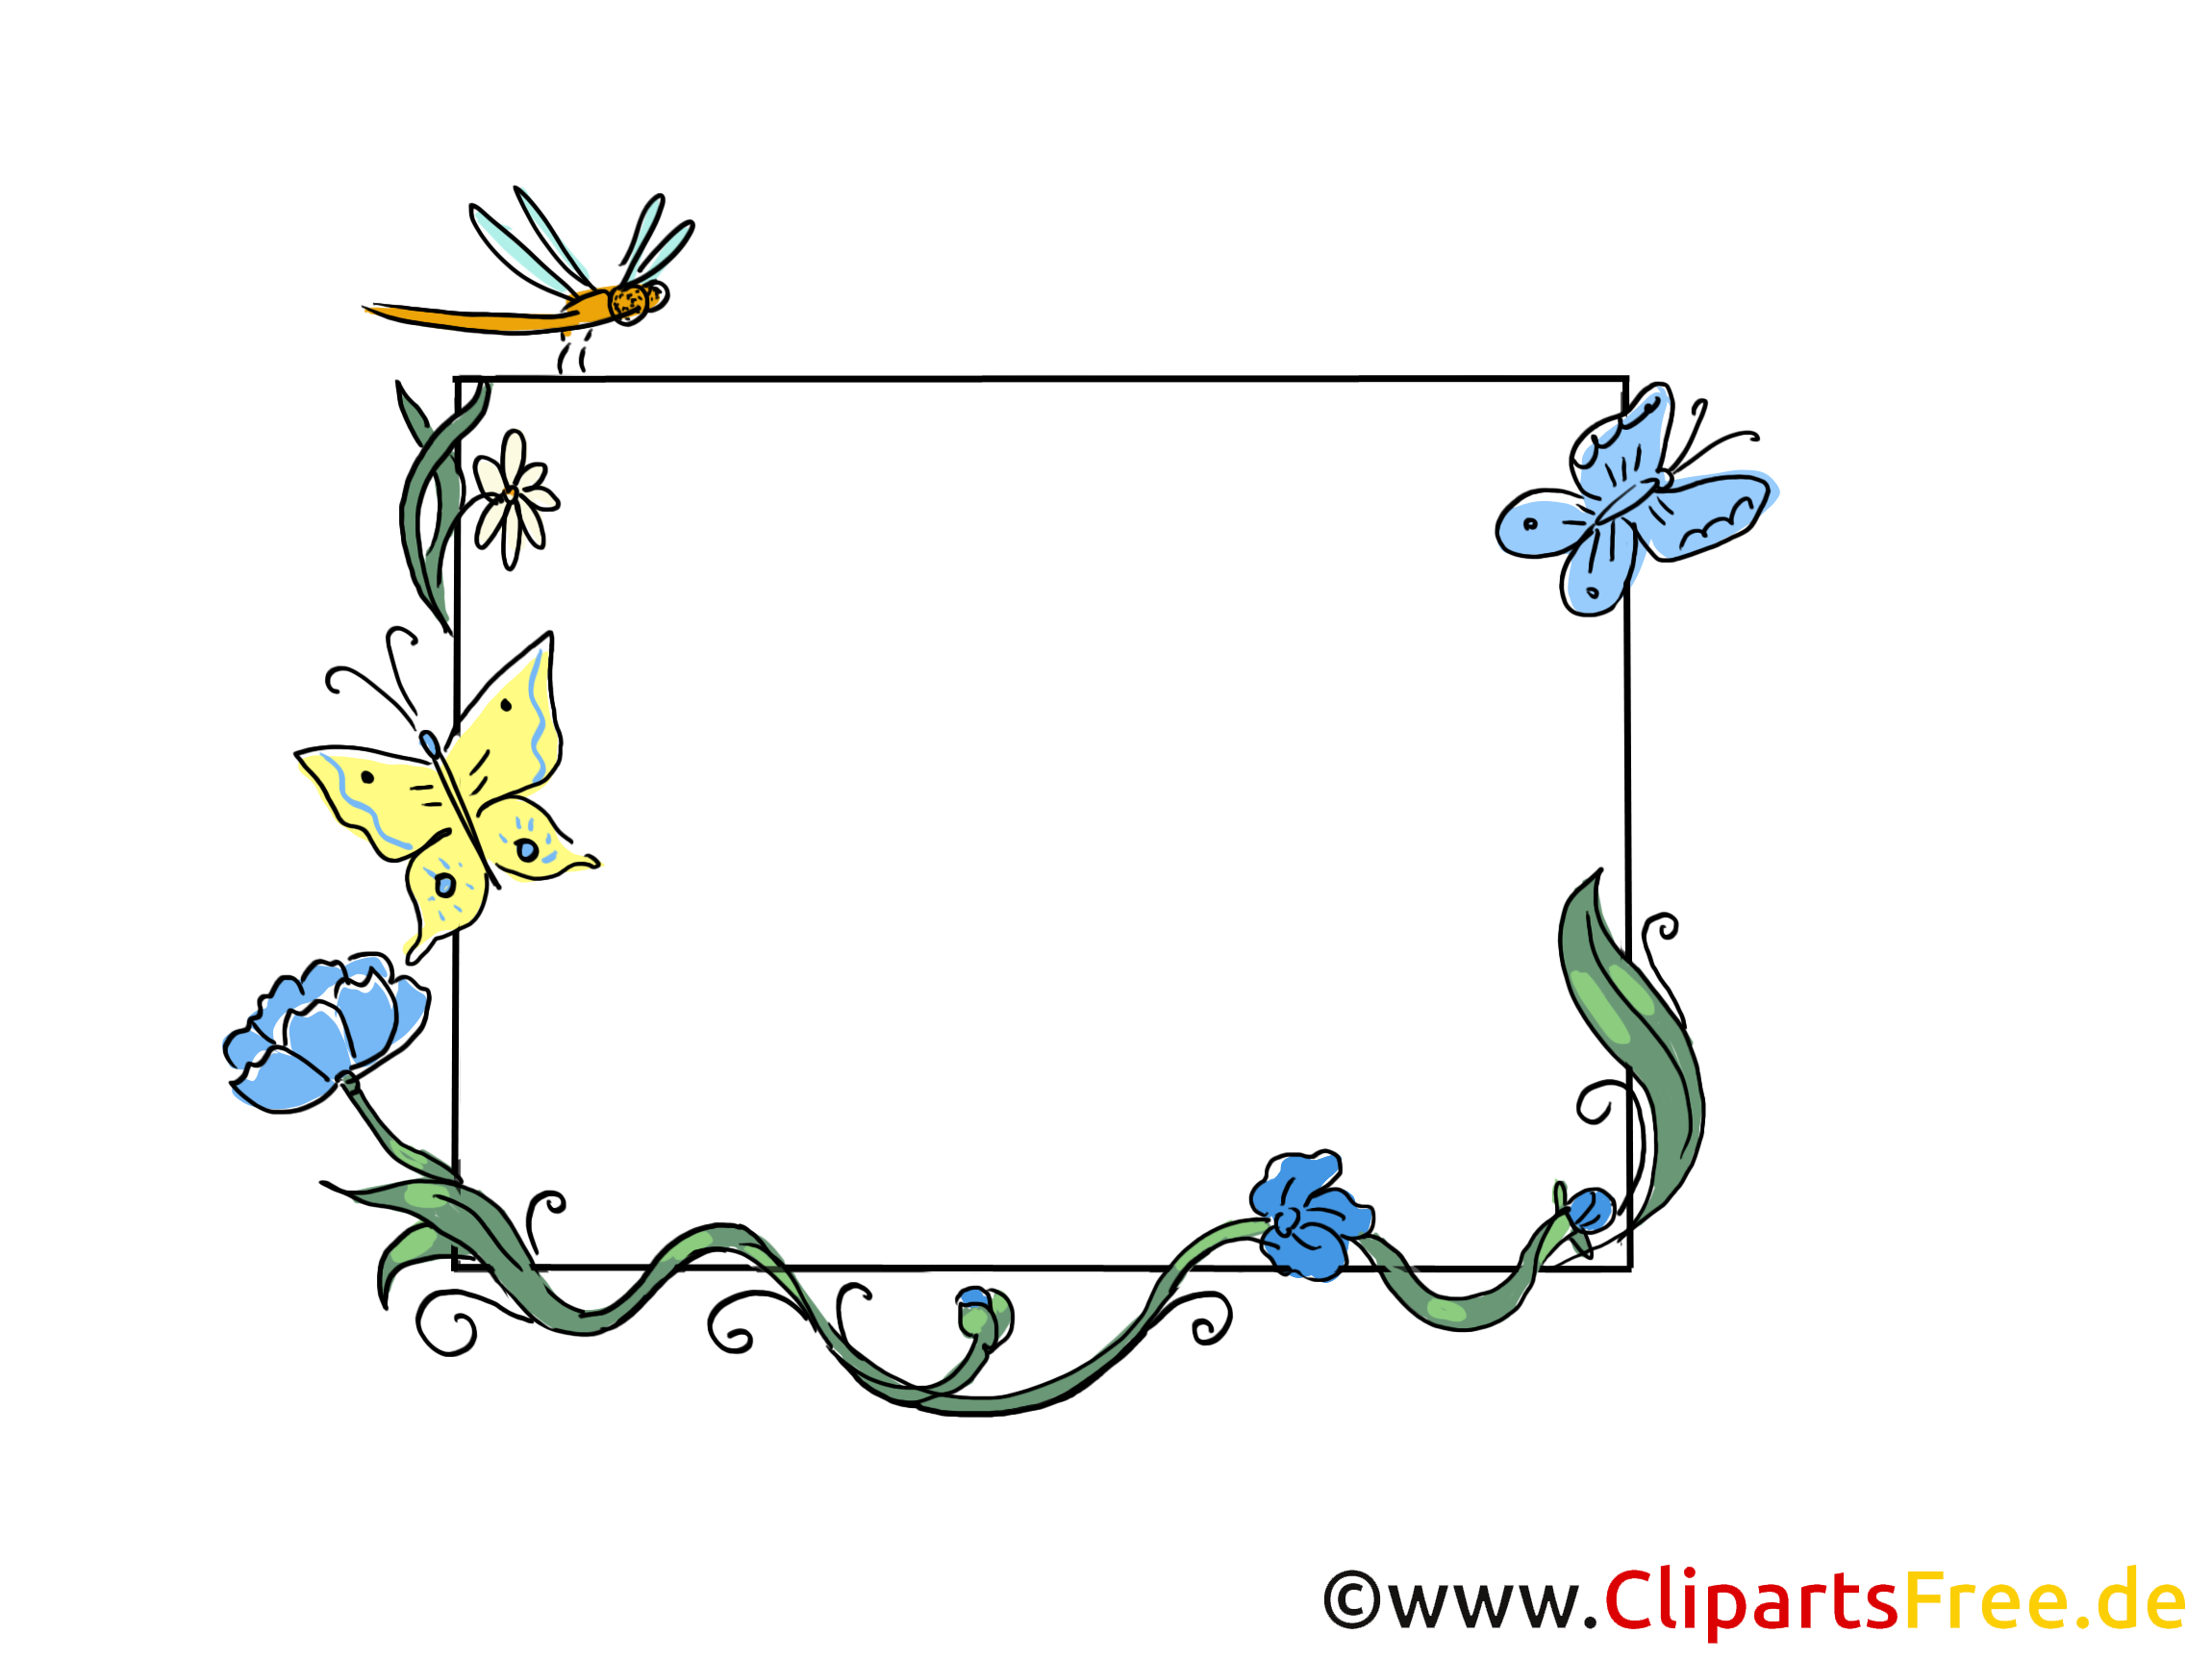 clipart insectes gratuit - photo #32